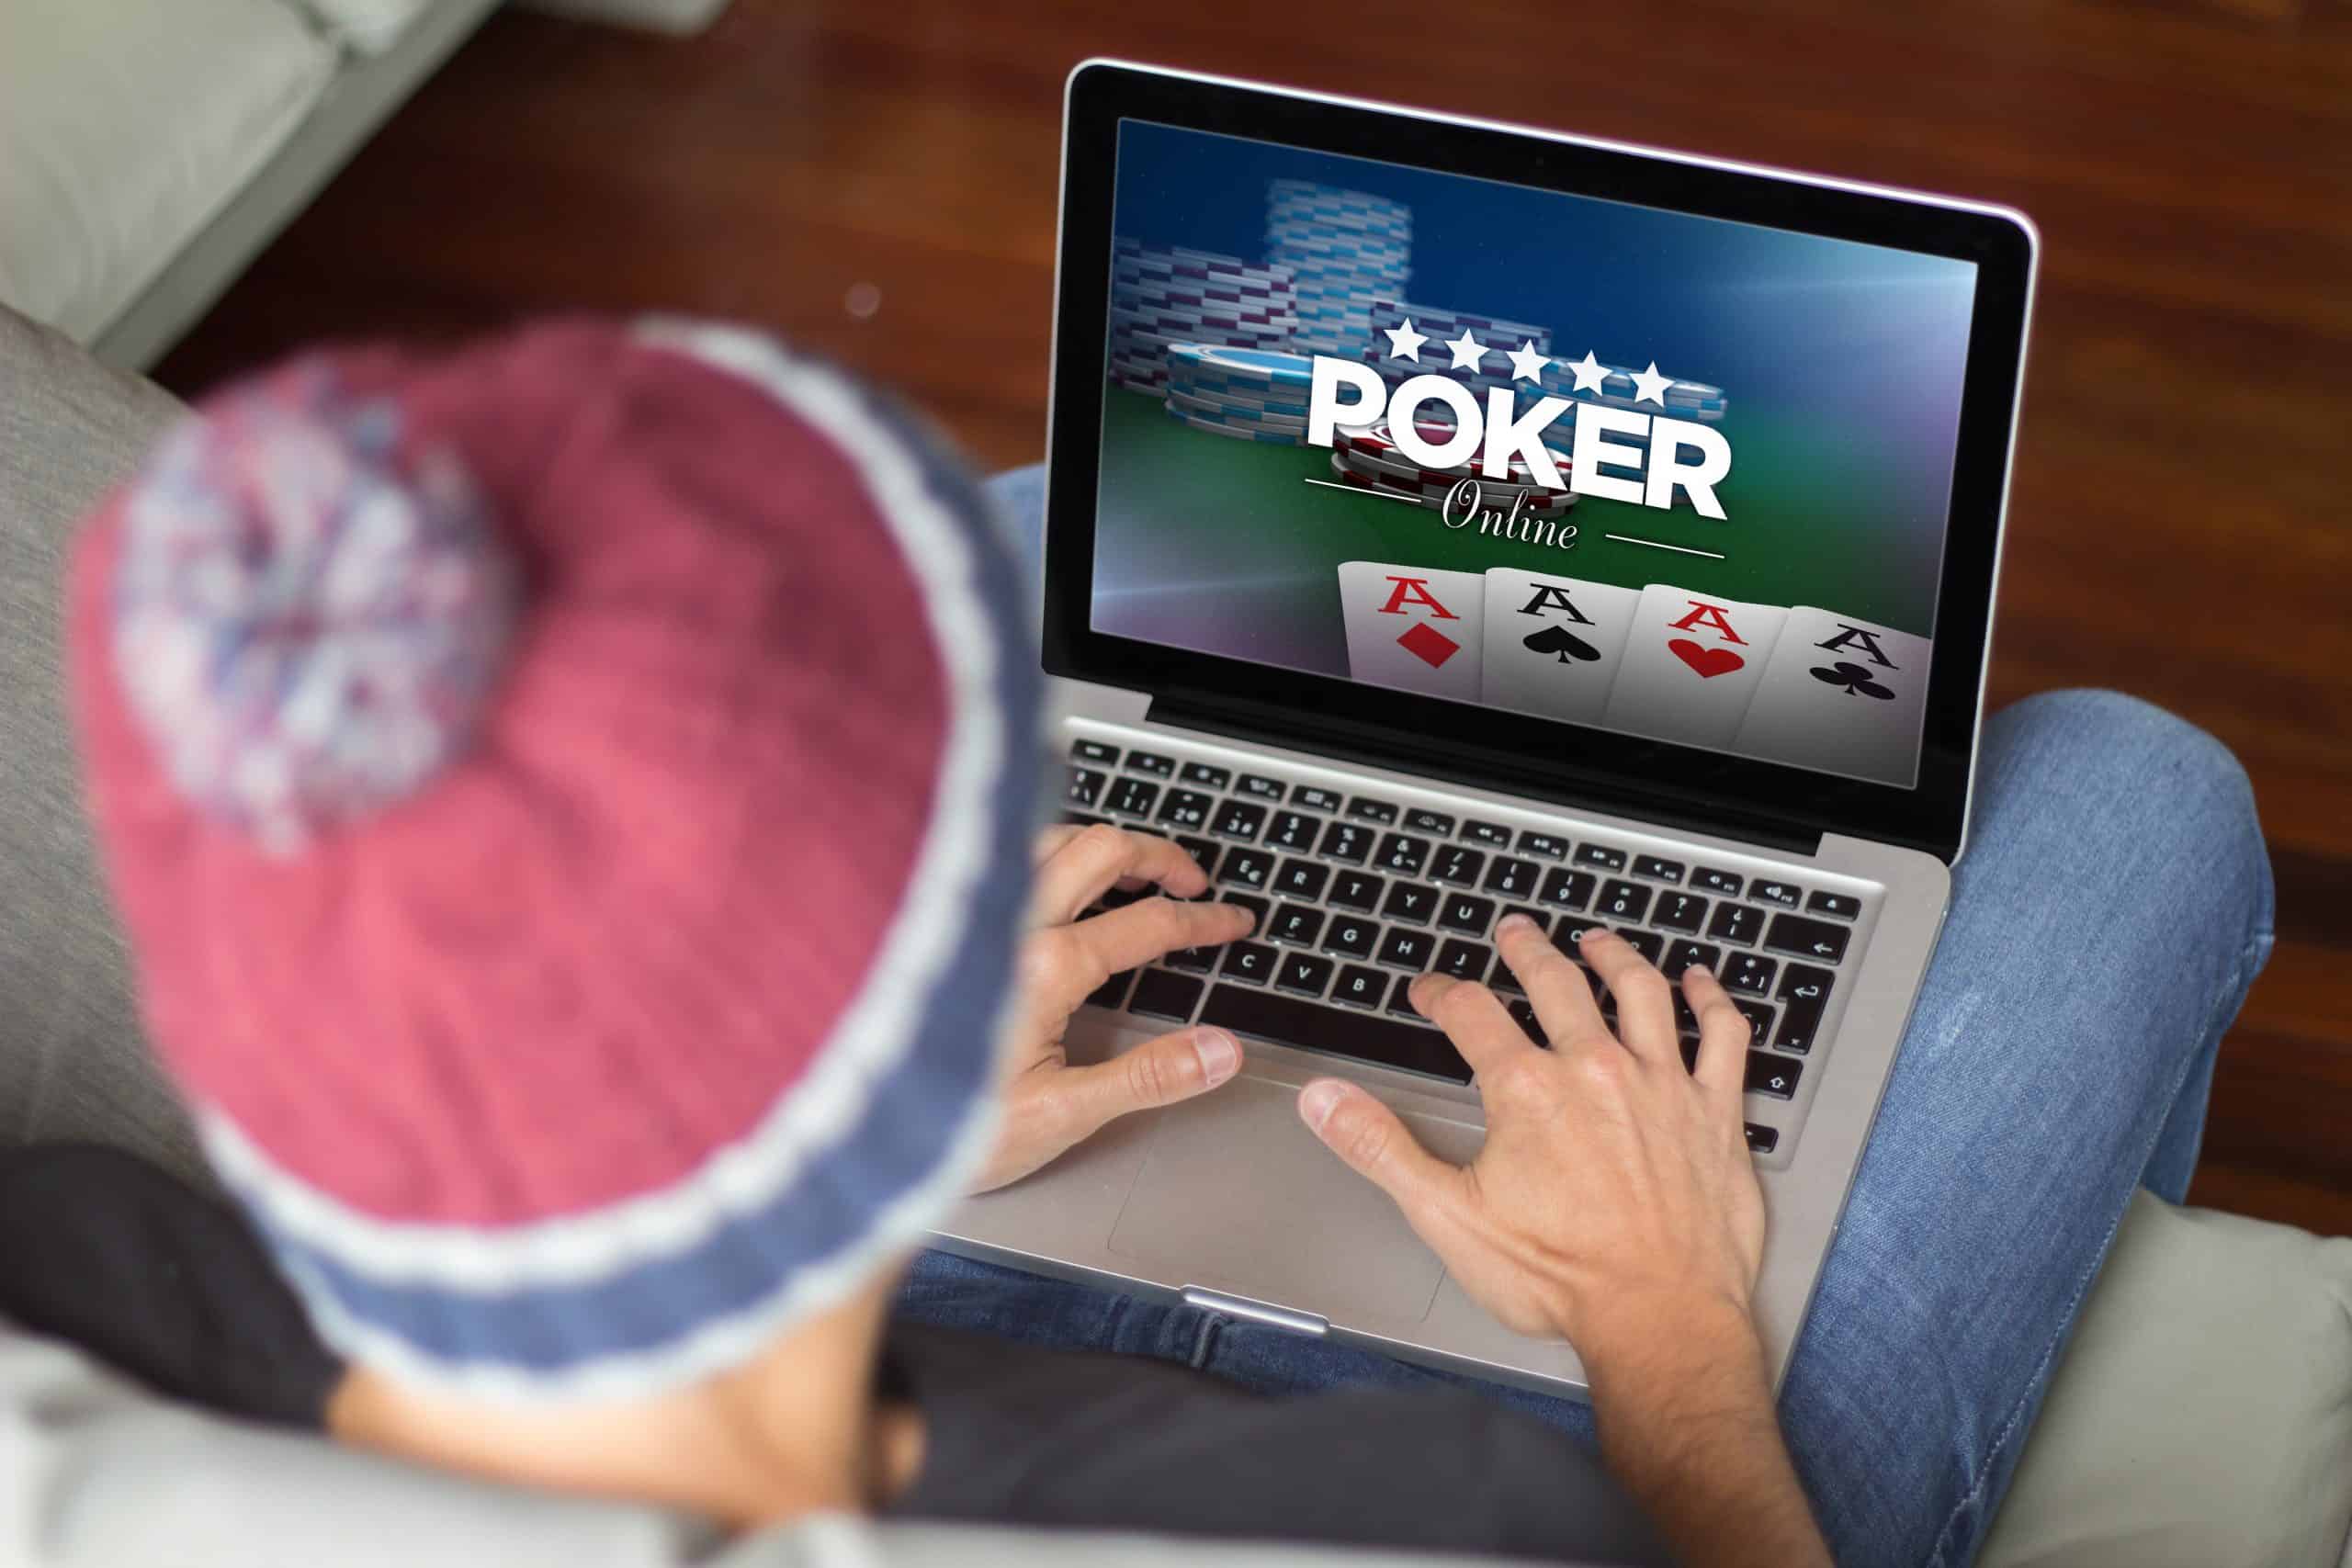 Poker - Những sai lầm khi đi bluff khi chơi game Poker là gì?